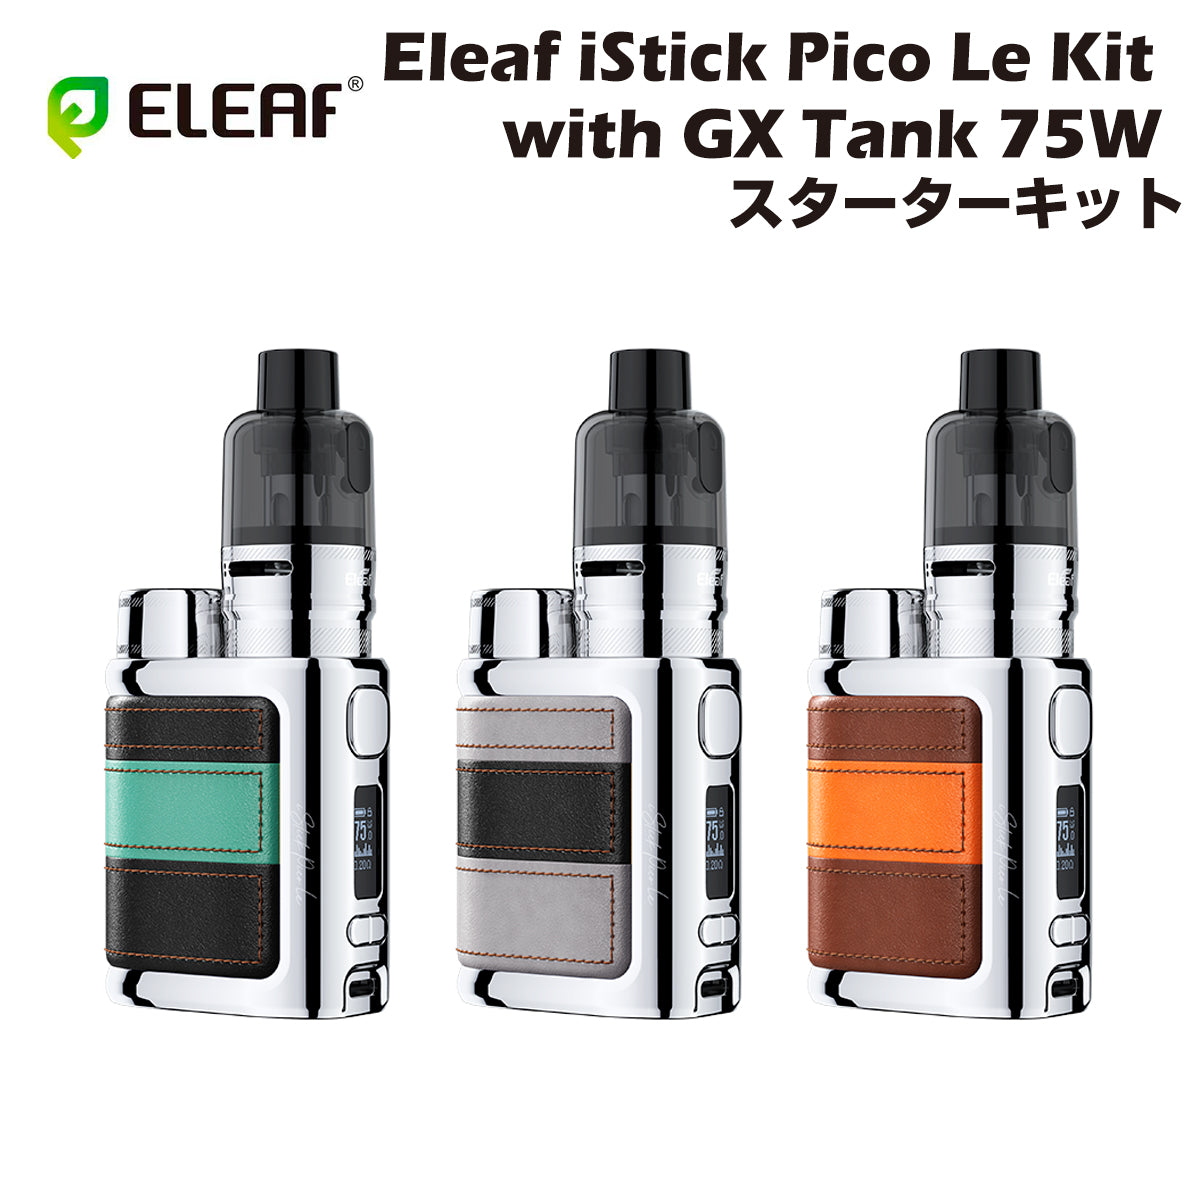 【送料無料】Eleaf iStick Pico Le 75W MOD Kit with GX Tank スターターキット イーリーフ ピコ 510規格 スレッド カートリッジ アトマイザー 電子タバコ 電子たばこ ベイプ vape